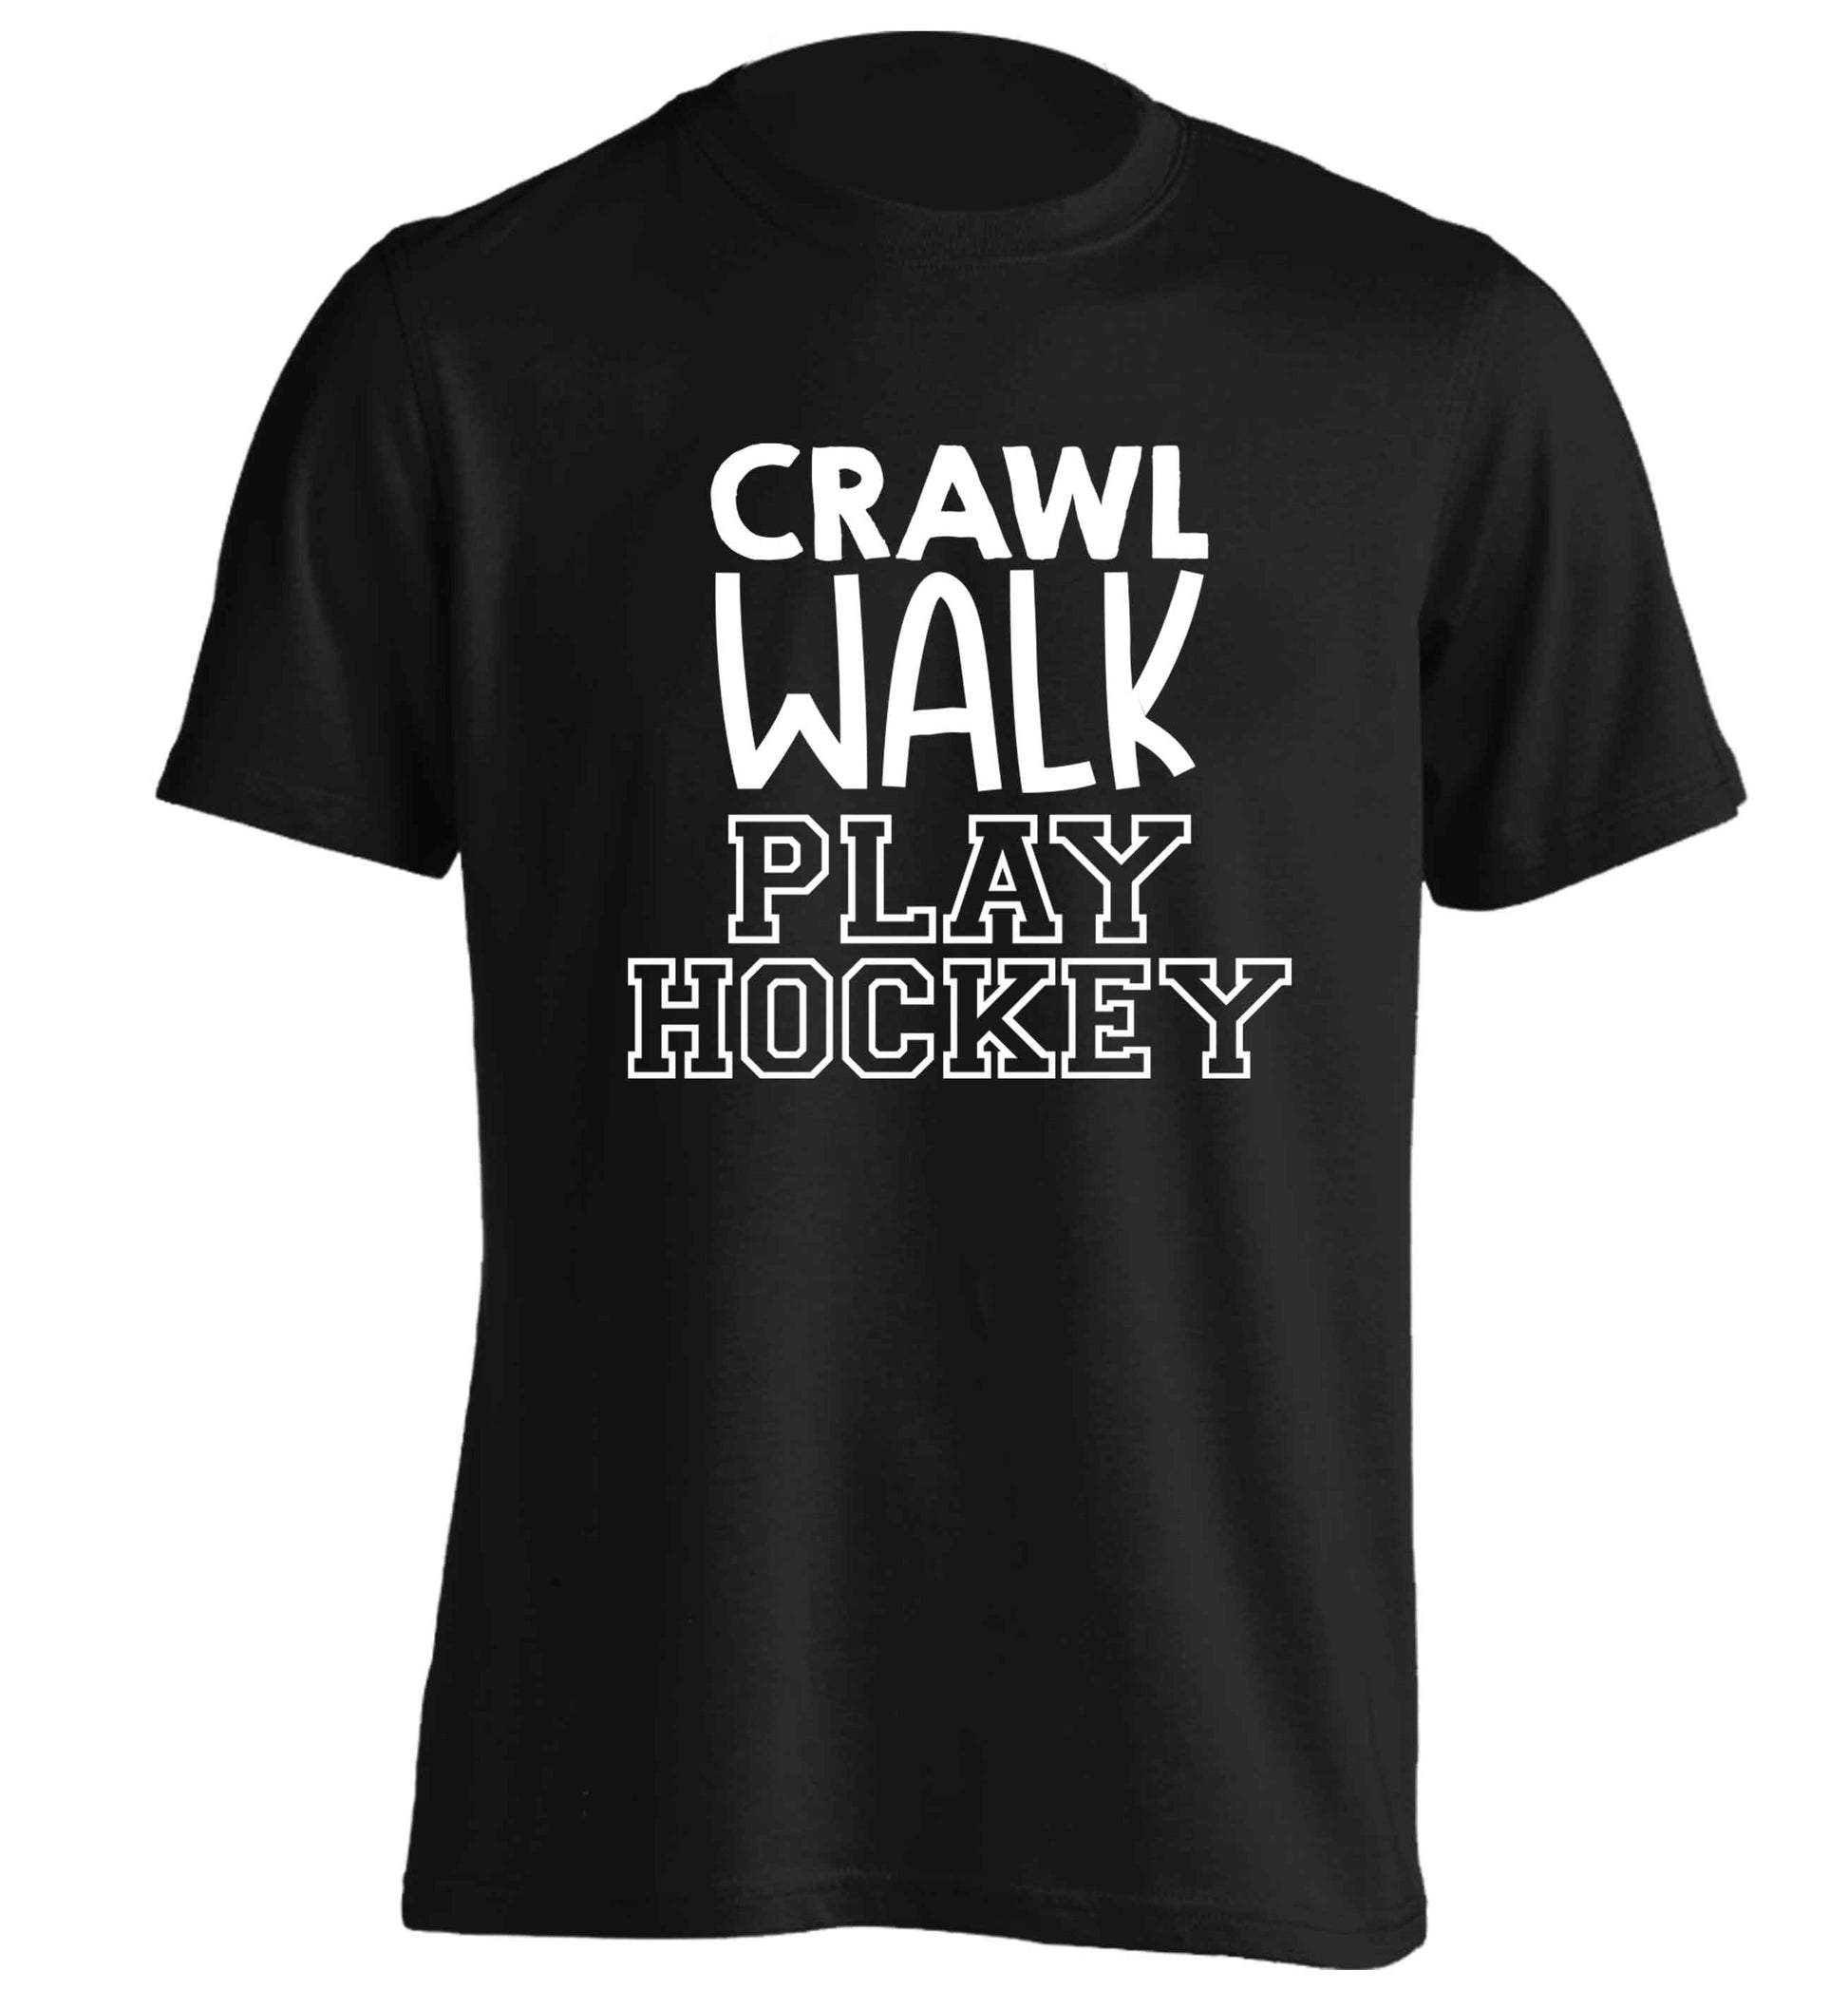 Crawl walk play hockey adults unisex black Tshirt 2XL